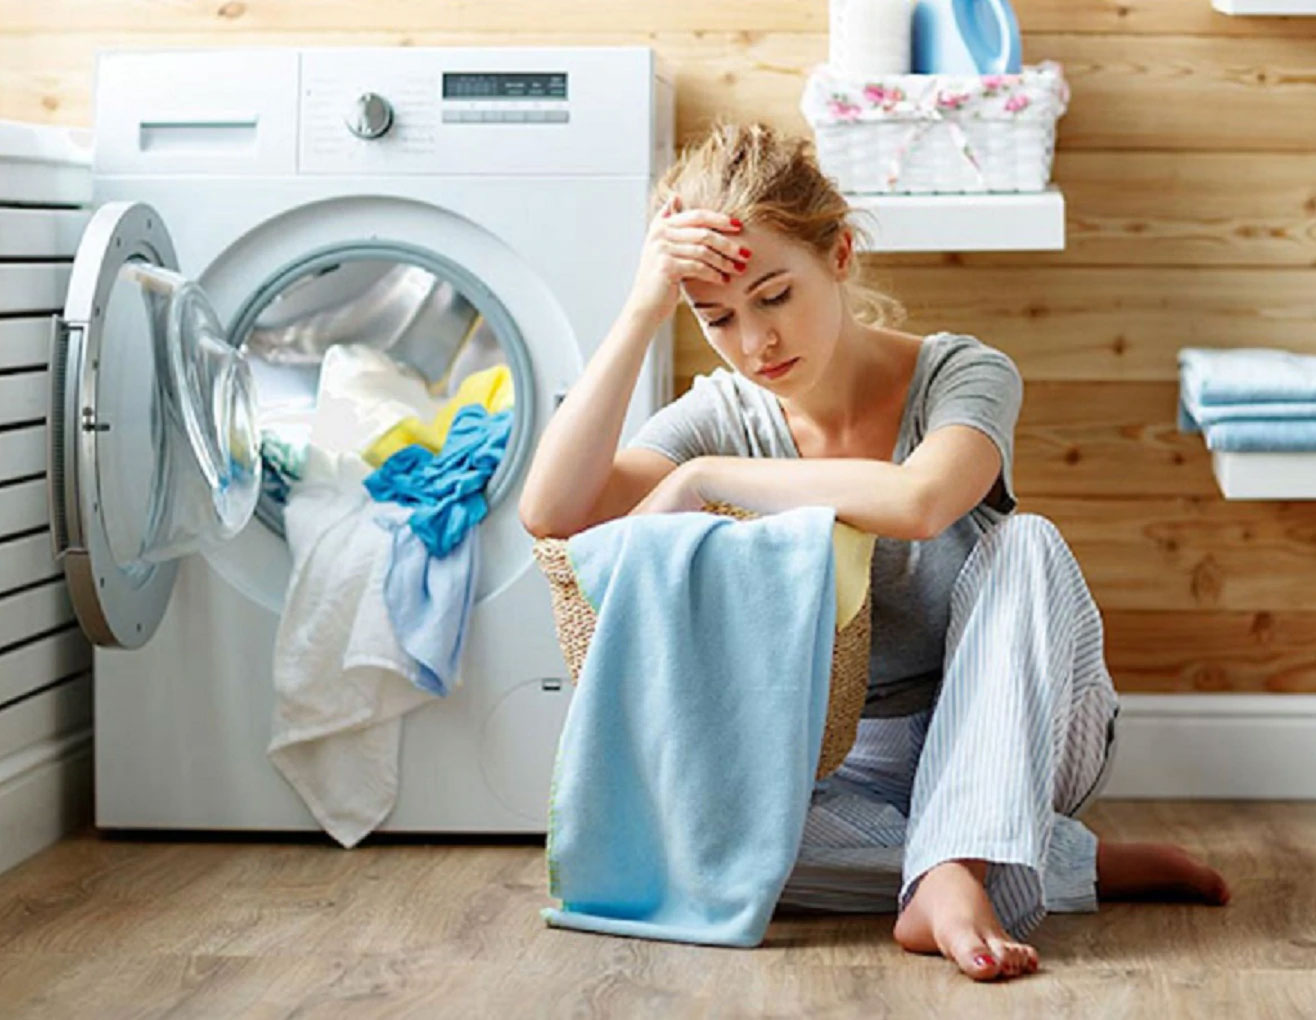 Hướng dẫn chi tiết cách khắc phục lỗi máy giặt kêu tít tít liên tục